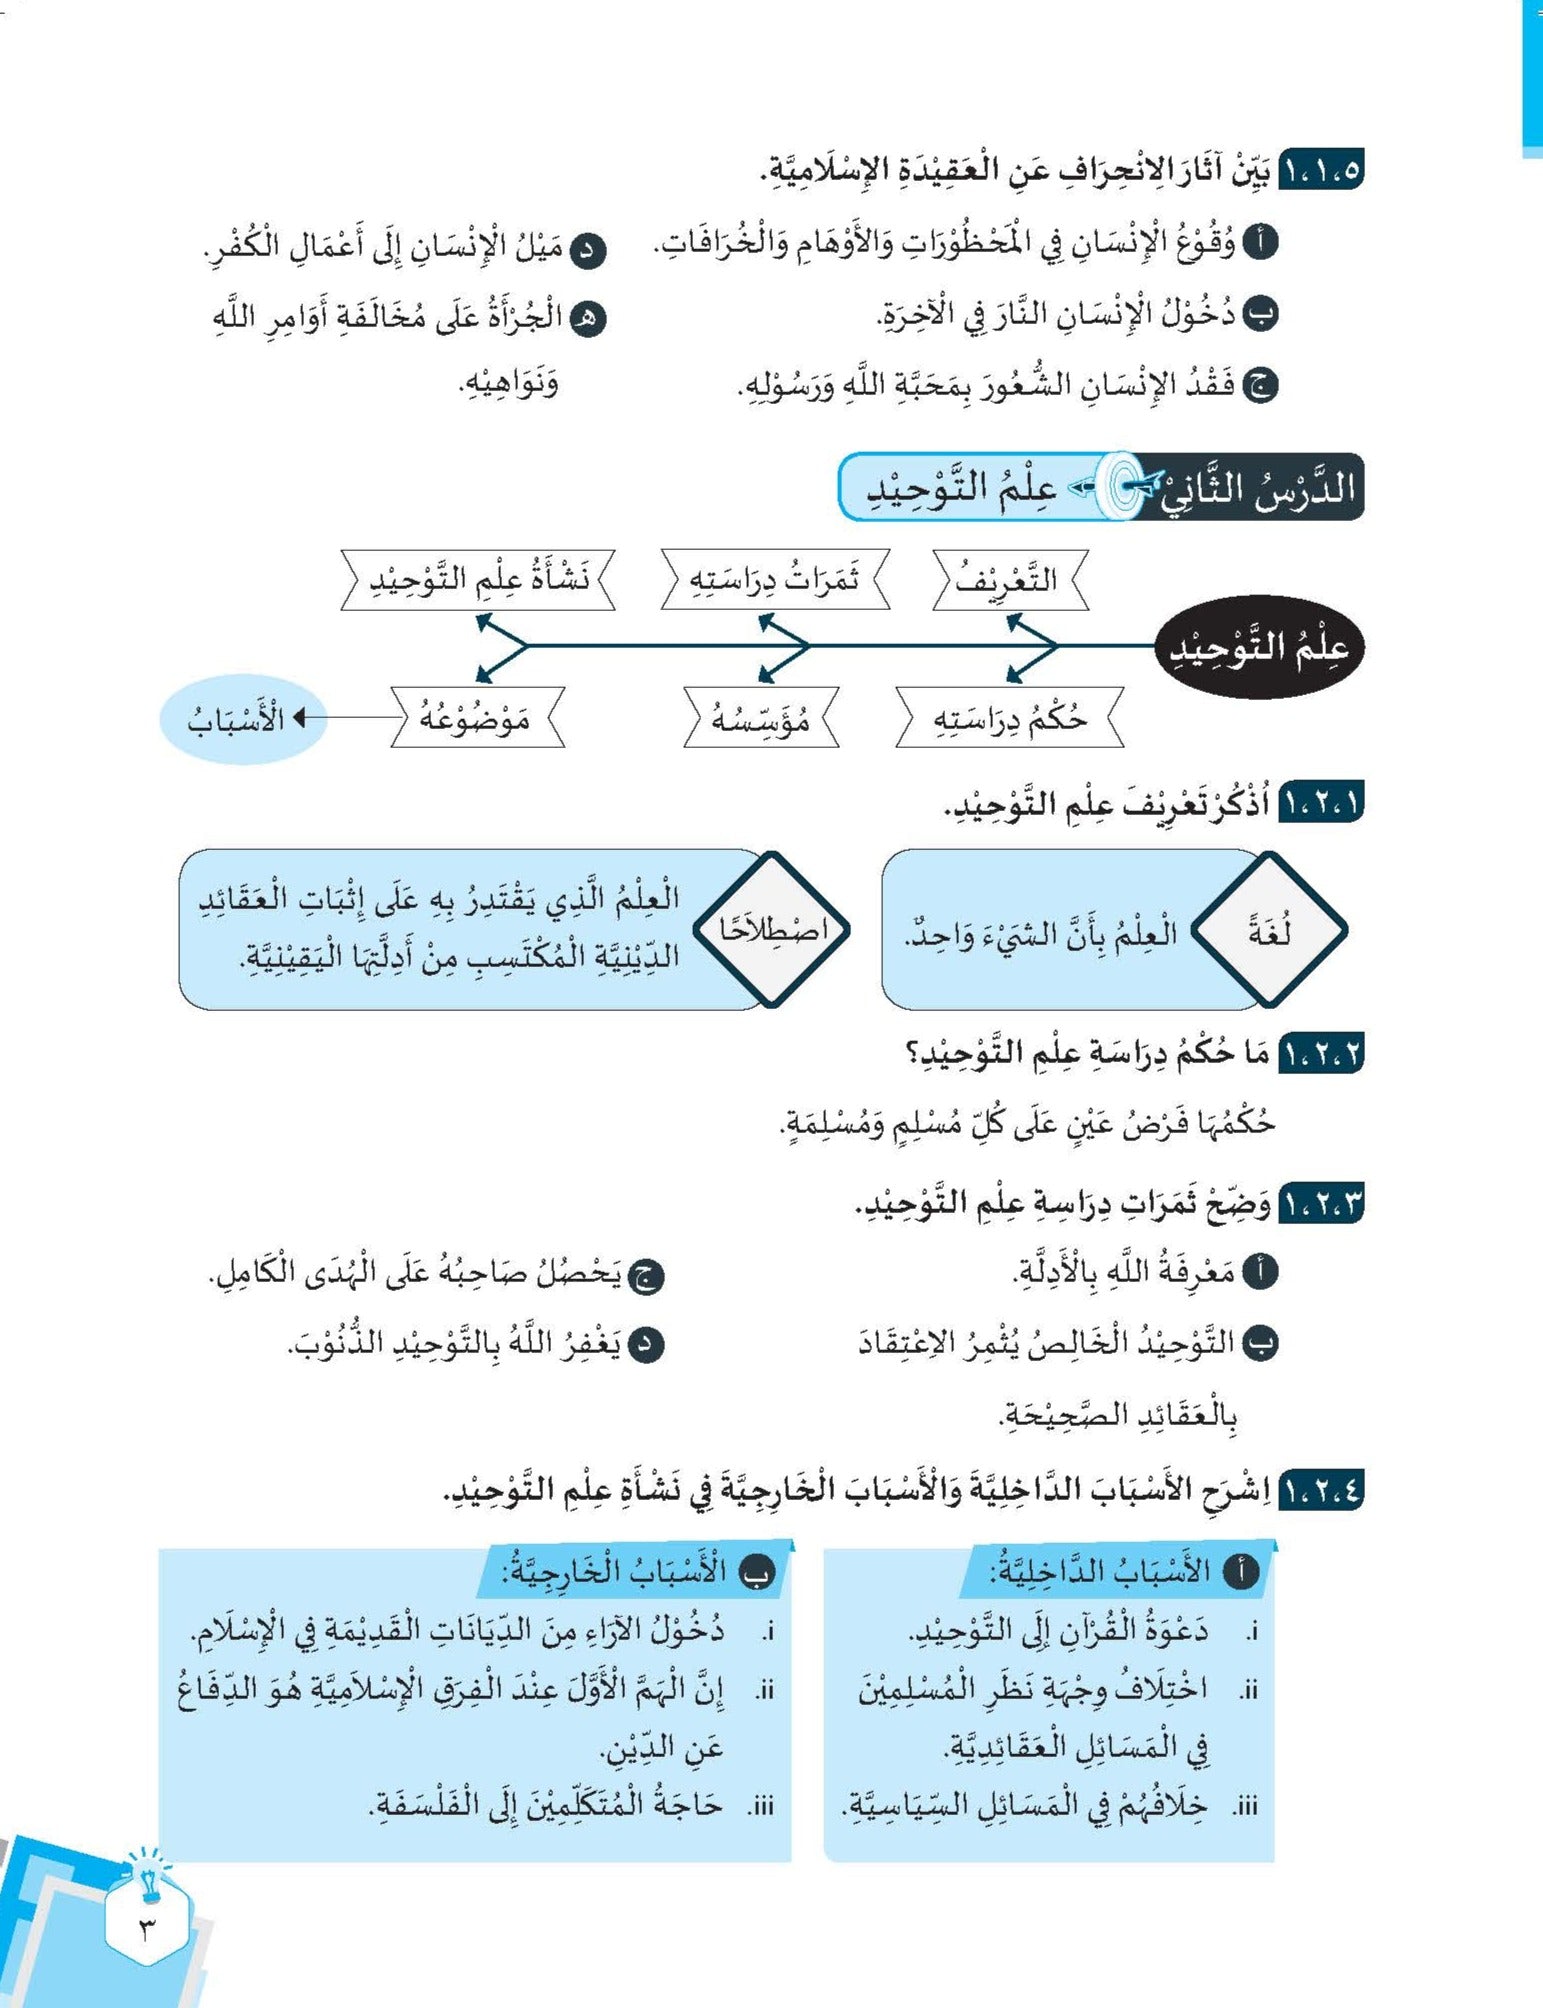 Skor Mumtaz - Talkhish Usul Al-din Tingkatan 1, 2 & 3 (Edisi Kemaskini) - (TBBS1140)